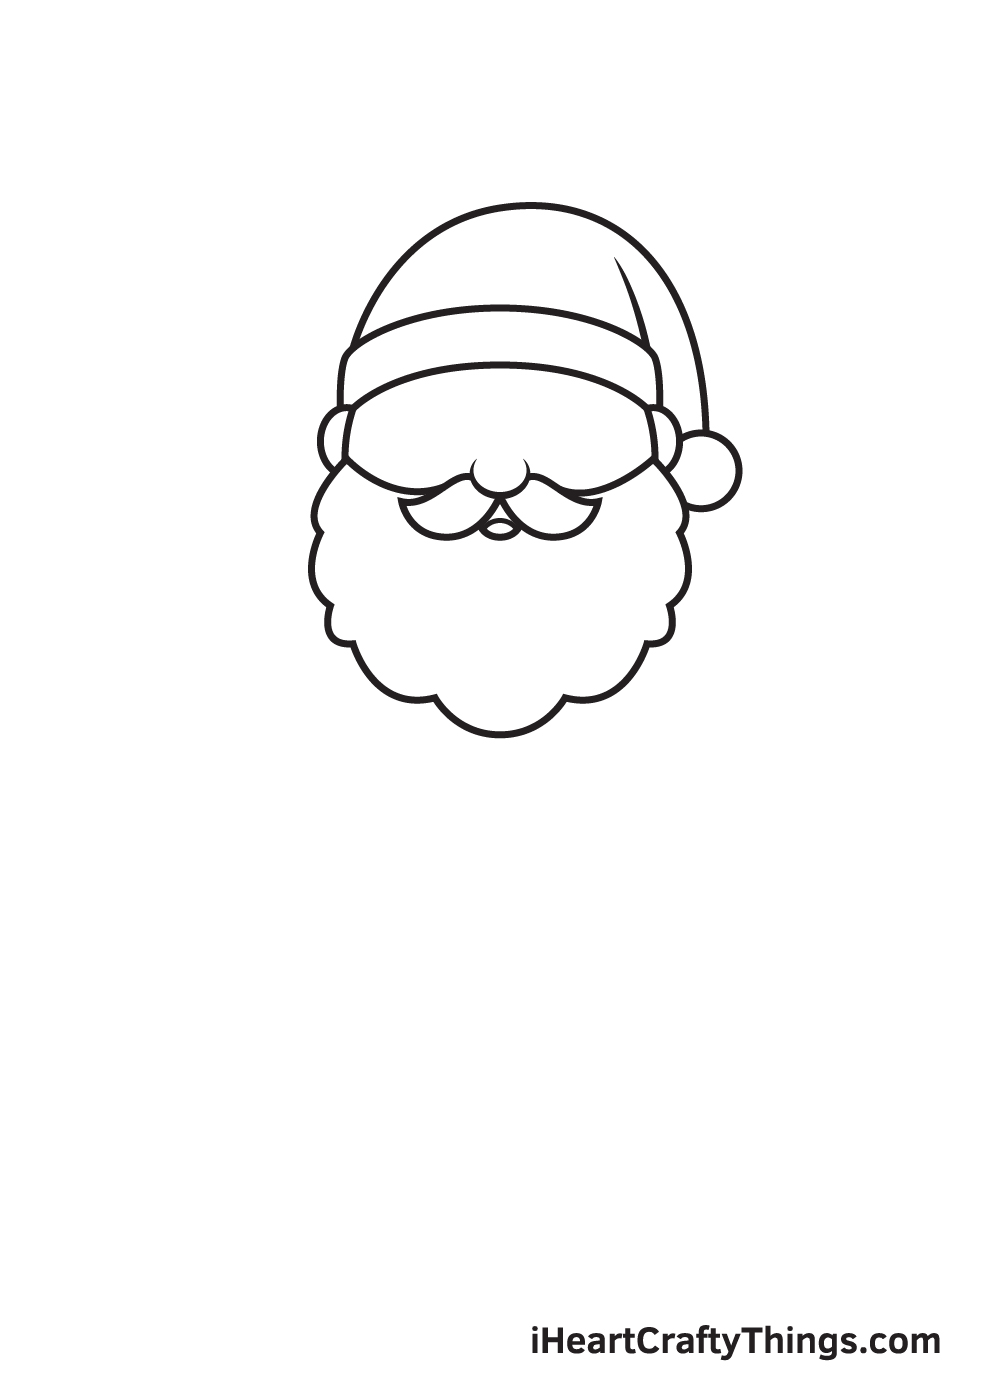 Santa Claus Drawing – Step 3